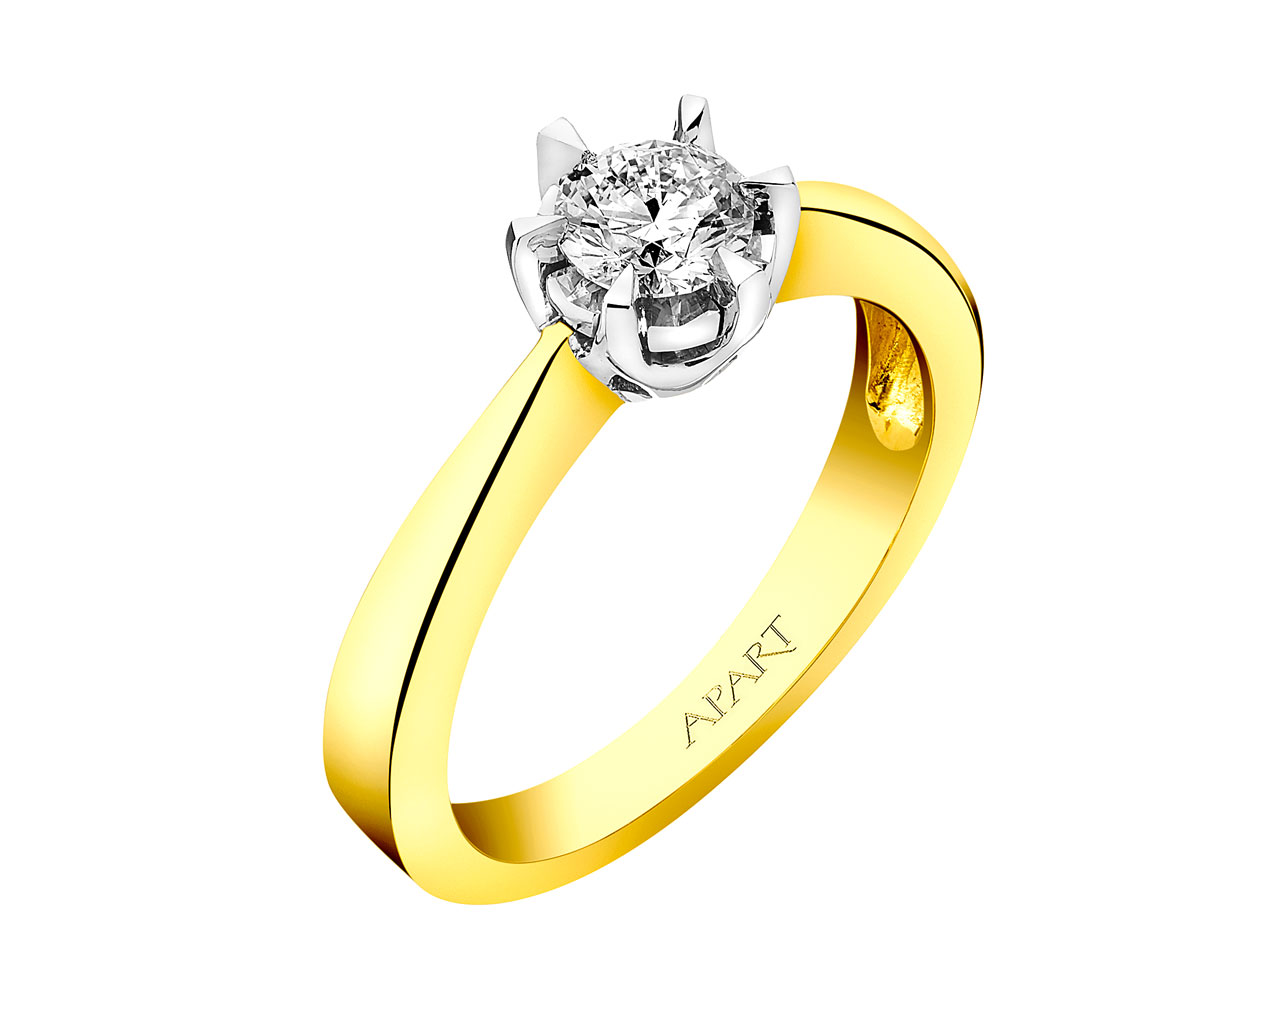 Prsten ze žlutého zlata s briliantem 0,38 ct - ryzost 585